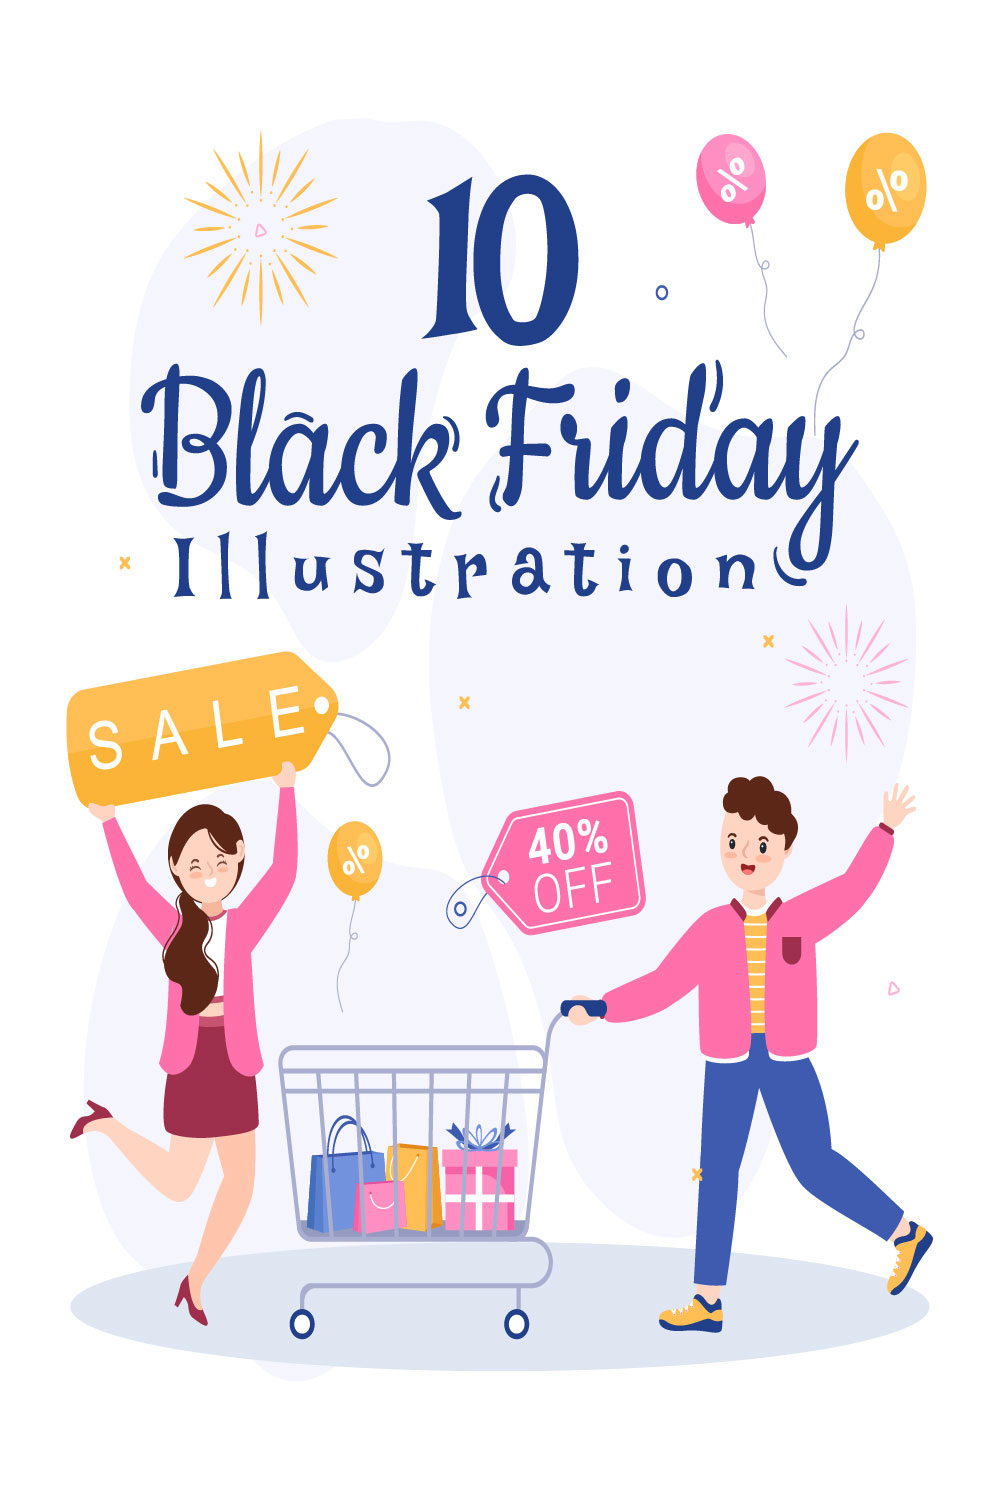 10 Black Friday Give Big Discount Illustration Pinterest Image.